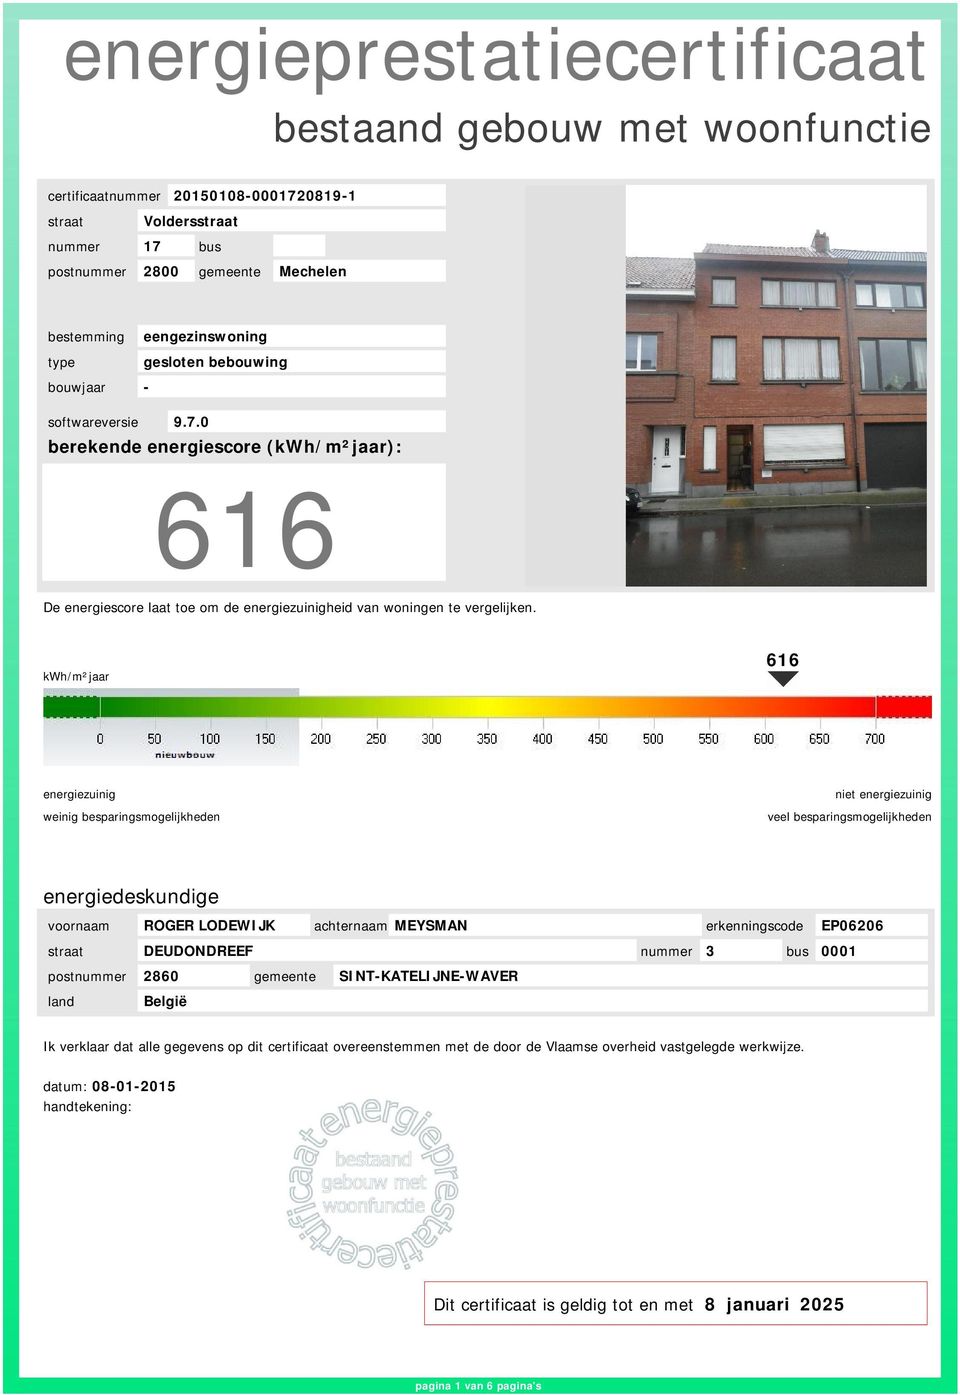 0 berekende energiescore (kwh/m²jaar): 616 De energiescore laat toe om de energiezuinigheid van woningen te vergelijken.